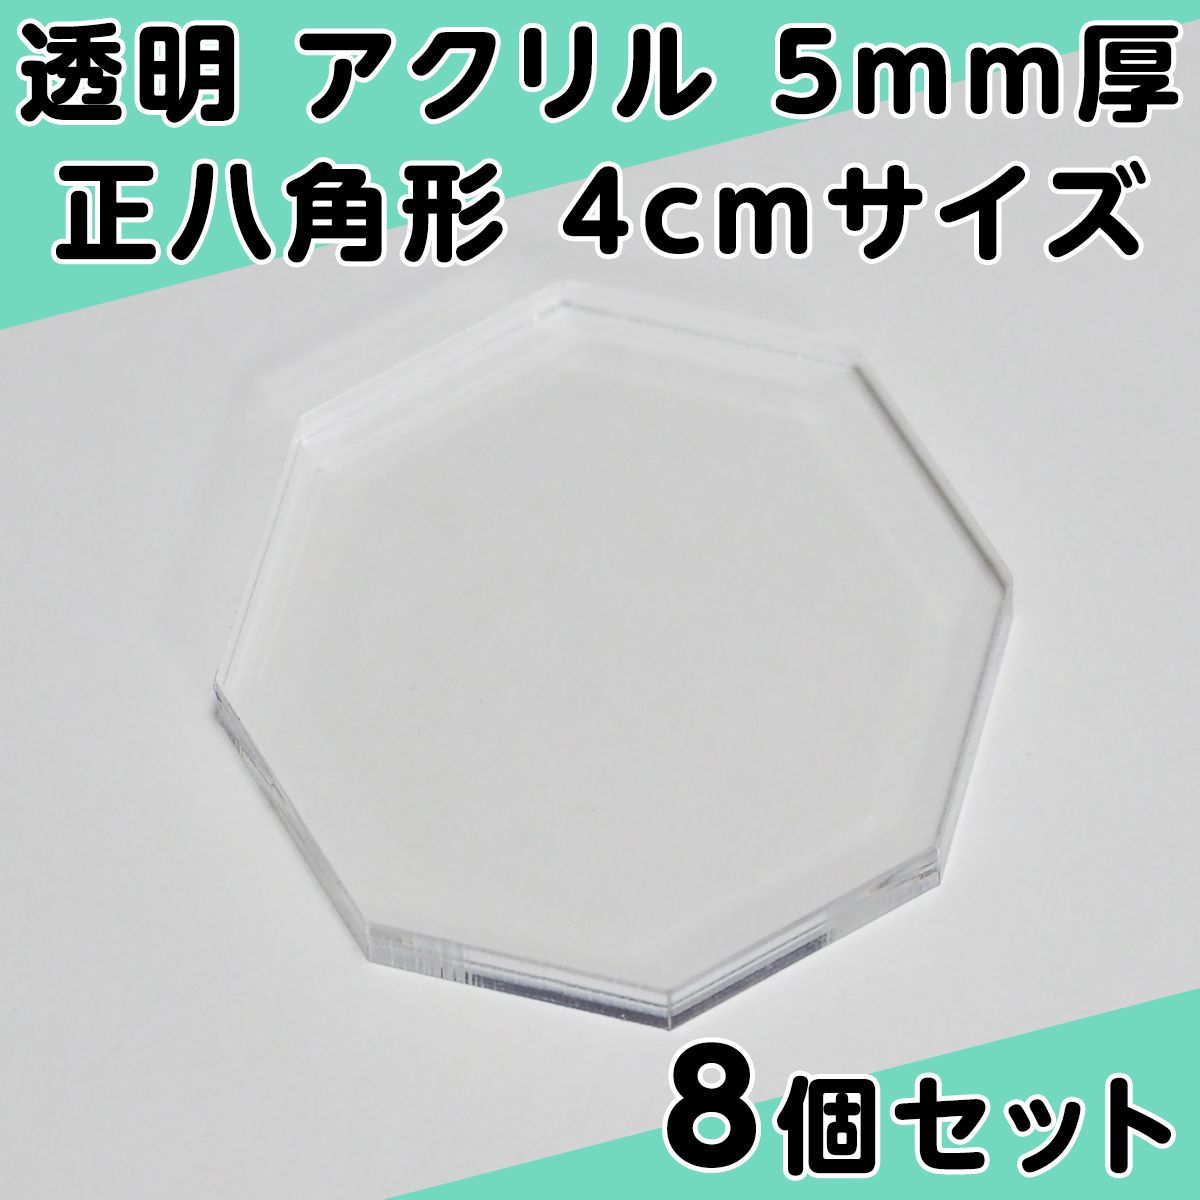 透明 アクリル 5mm厚 正八角形 4cmサイズ 8個セット - メルカリ